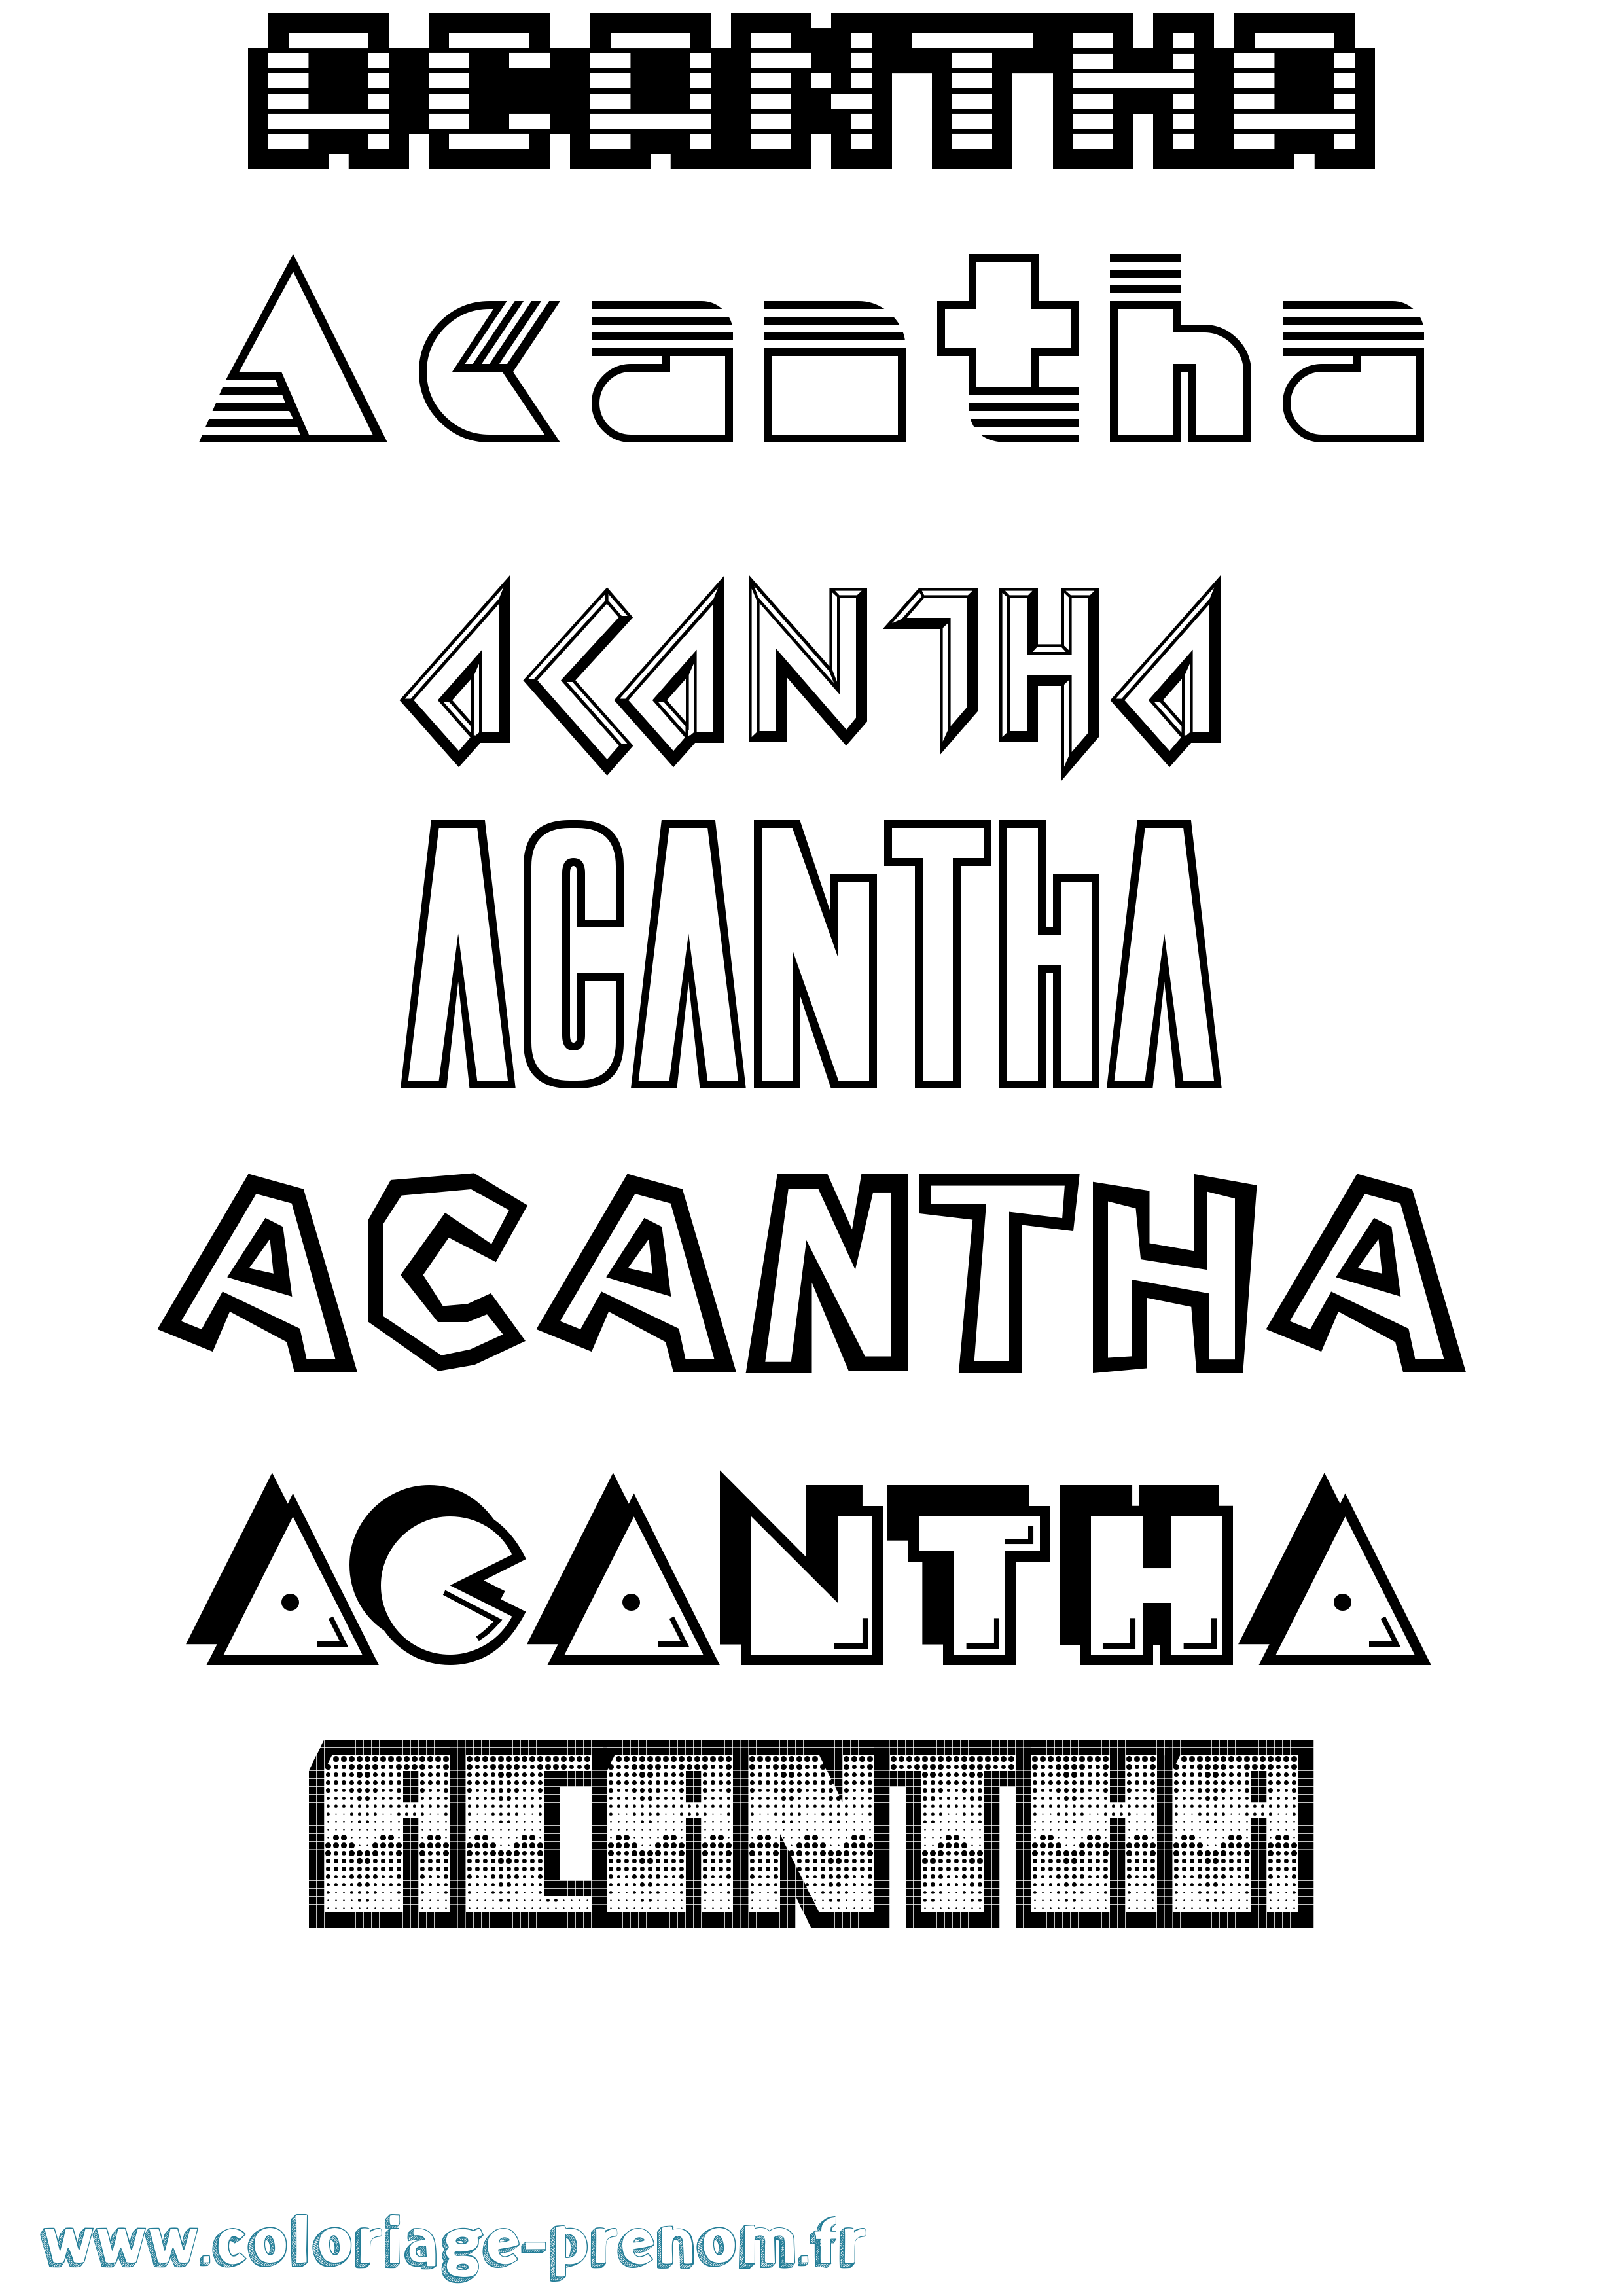 Coloriage prénom Acantha Jeux Vidéos